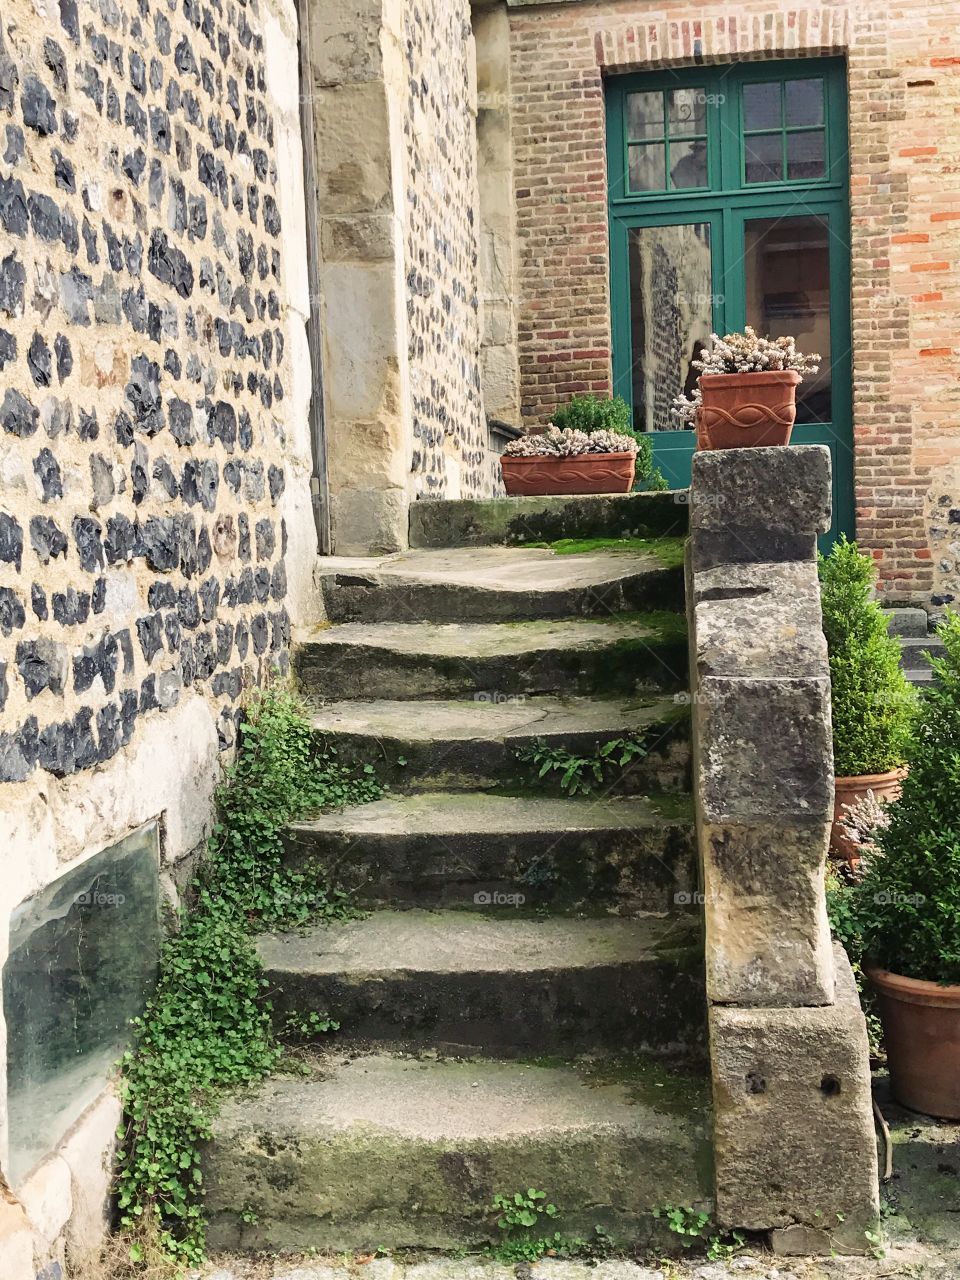 Stairway in Honfleur, France